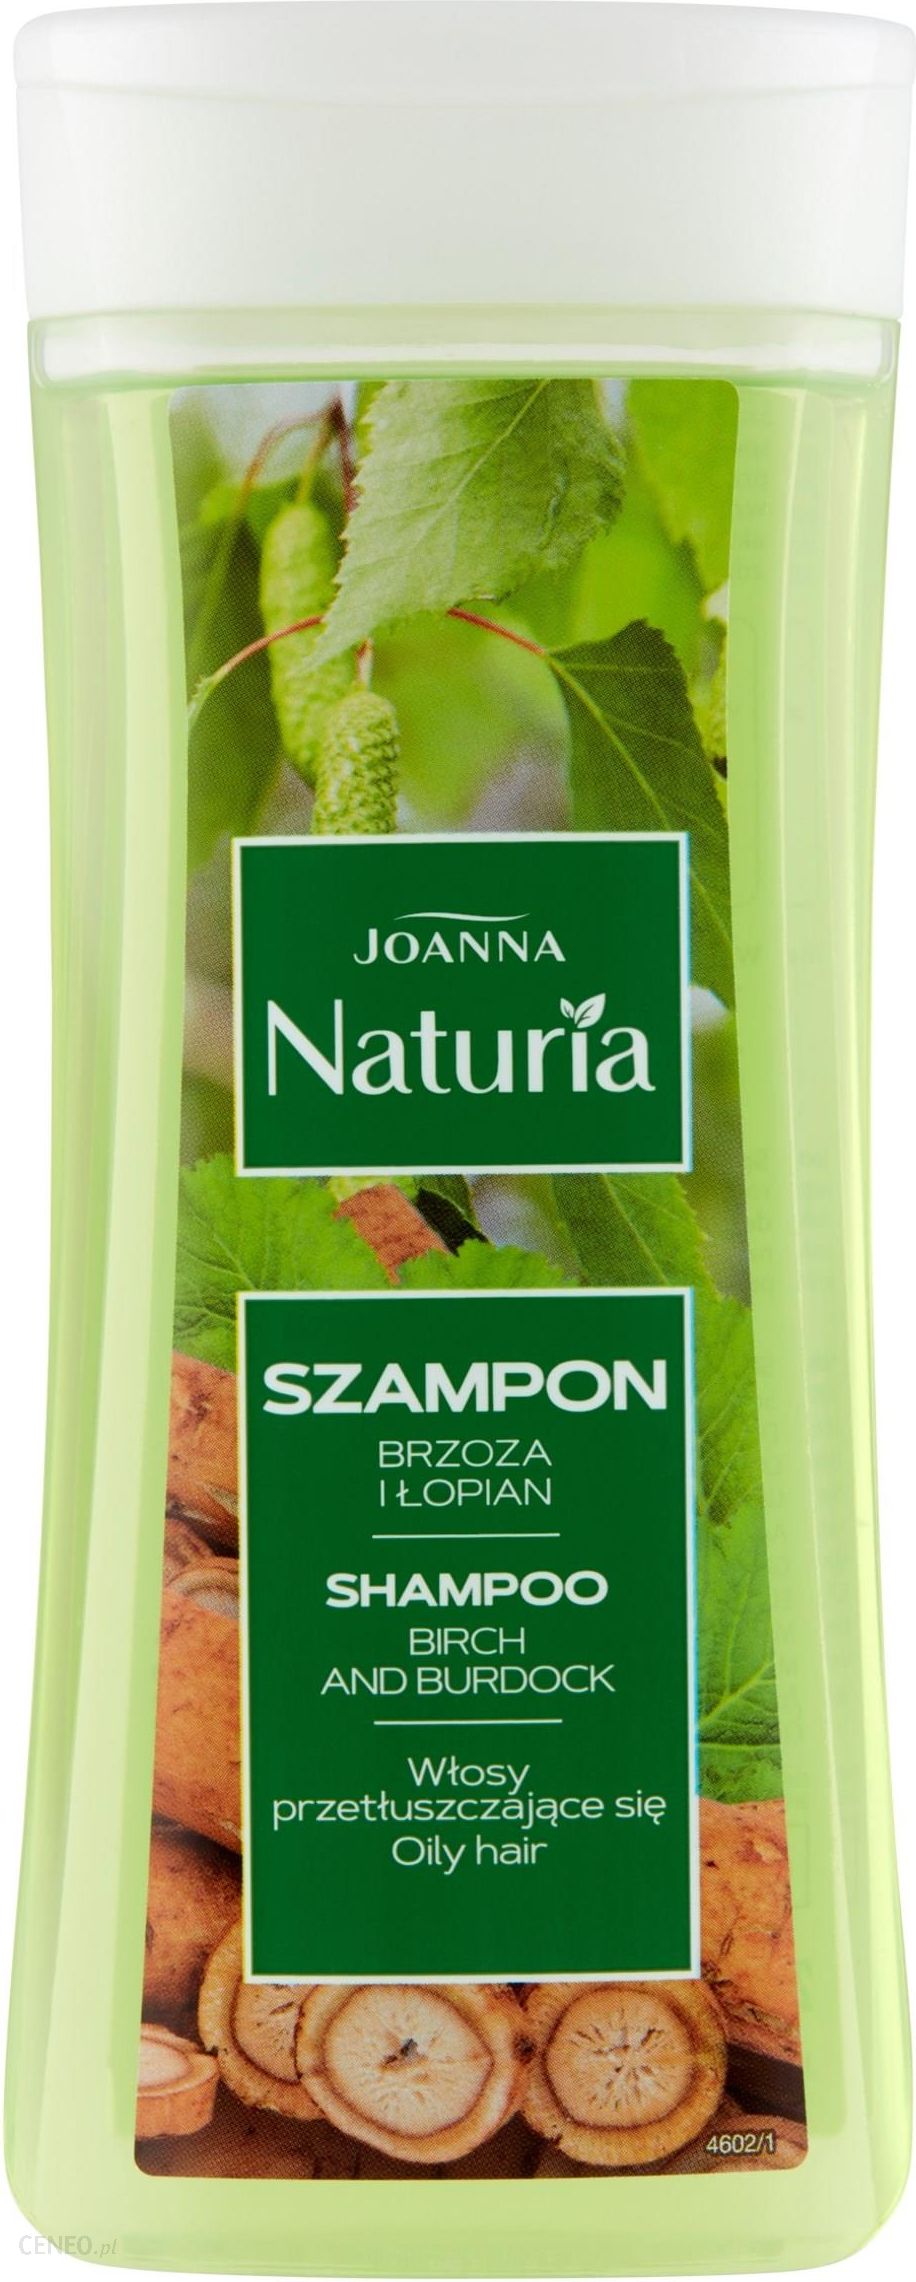 szampon naturia brzoza i łopian skład